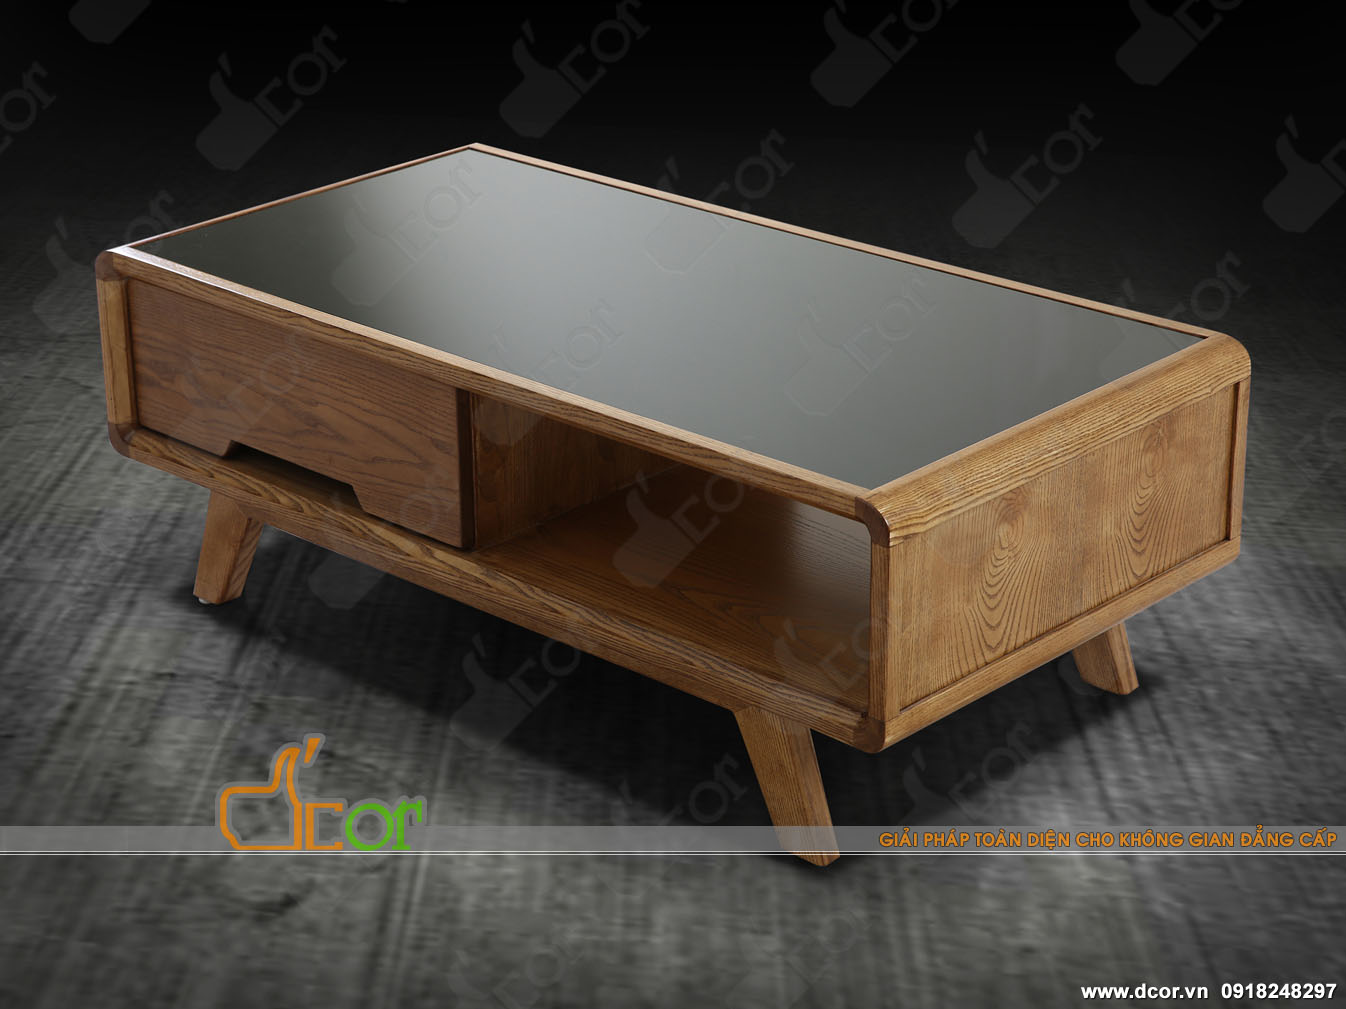 Mẫu bàn trà gỗ tuyệt vời hứa hẹn sẽ thay đổi hoàn toàn không gian nội thất của bạn > mau-ban-tra-bt66mau-ban-tra-bt66